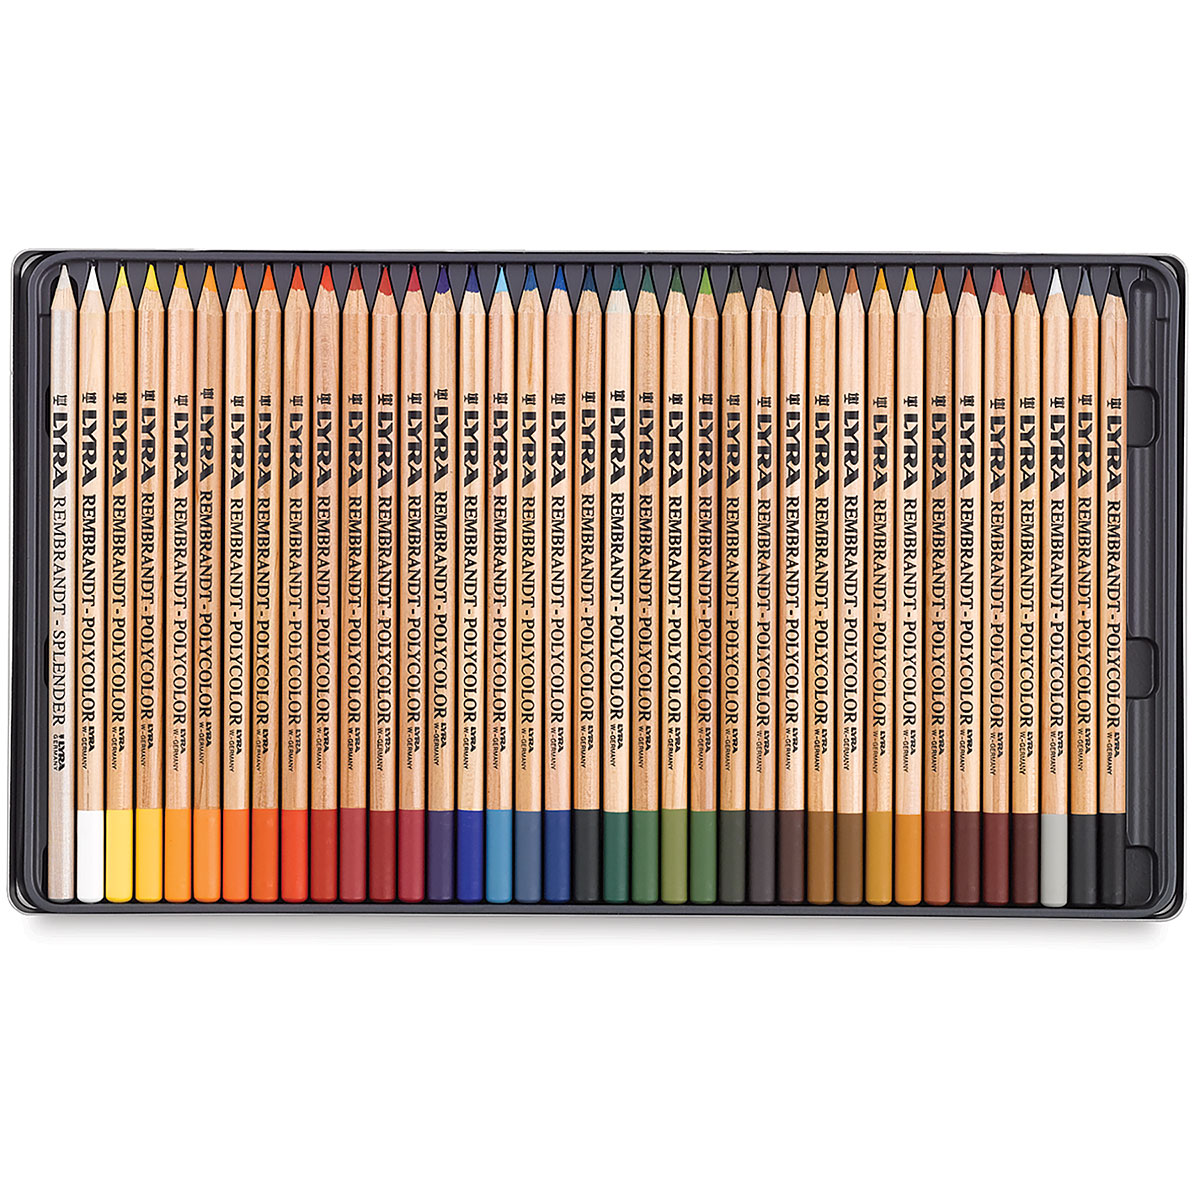 Dixon Lyra Rembrandt Pencil Drawing Set - 4H, 3H, H, F, HB, 3B, 2B, 4B, 5B,  6B, B,  Lead - Assorted Lead - 12 / Set - DIX2001123